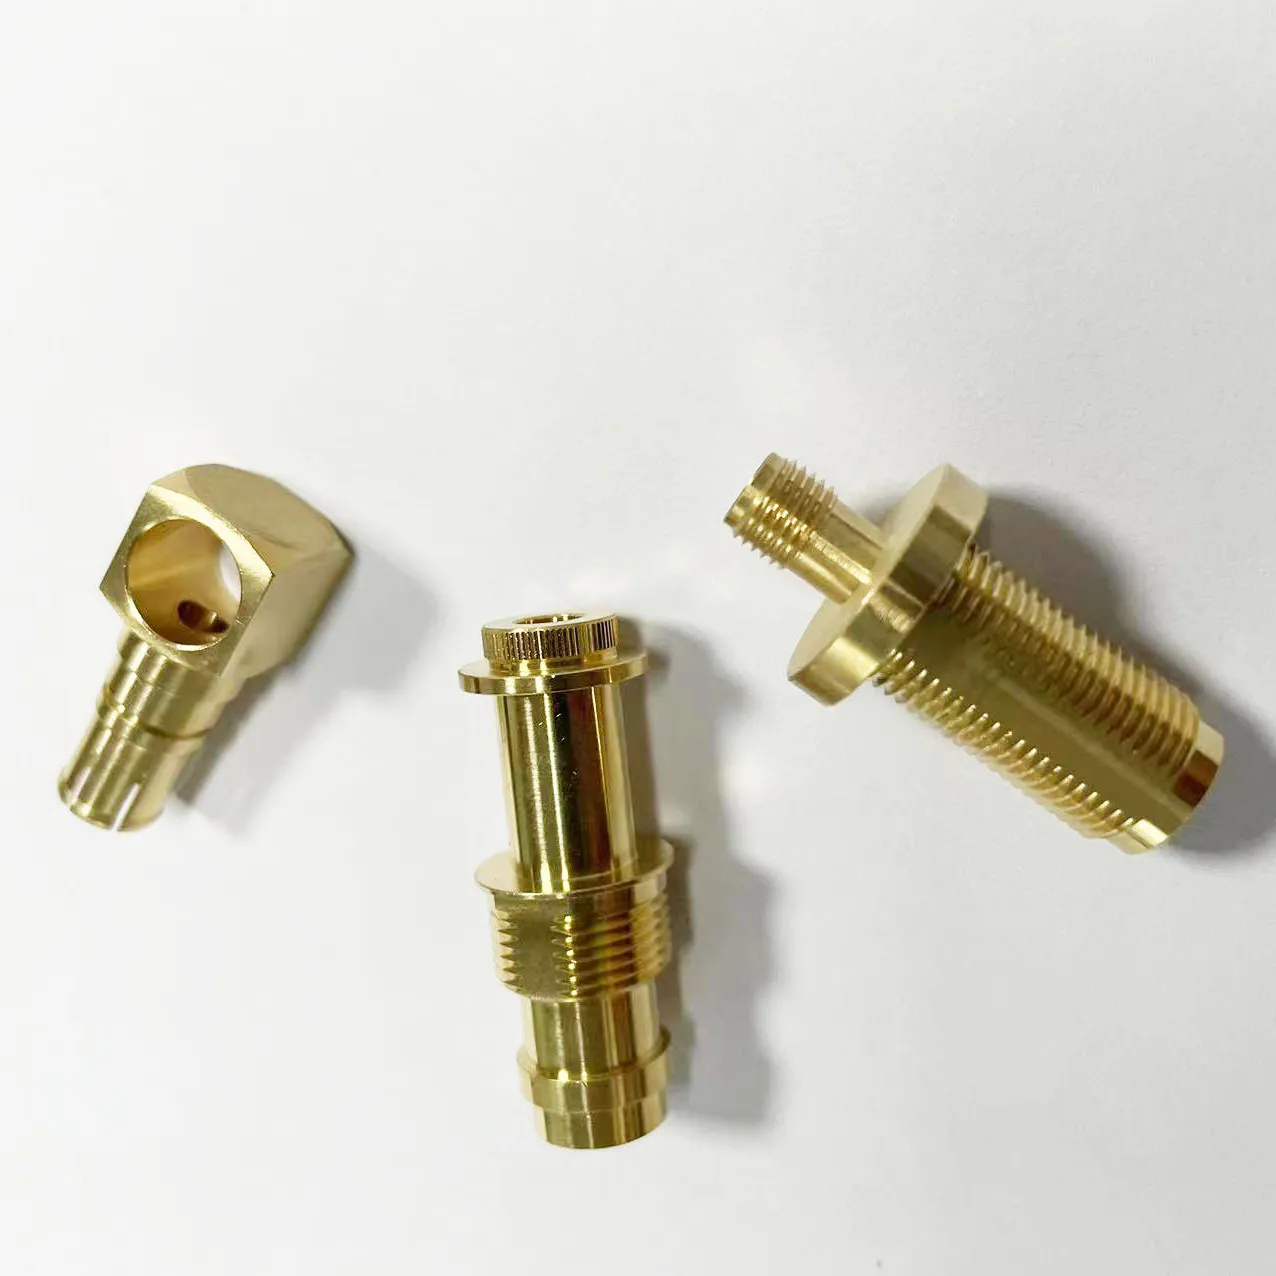 Messing-Klemm verschraubung Stecker-Kupplungs rohr verschraubung Stecker-Schnellverbinder-Kompression adapter